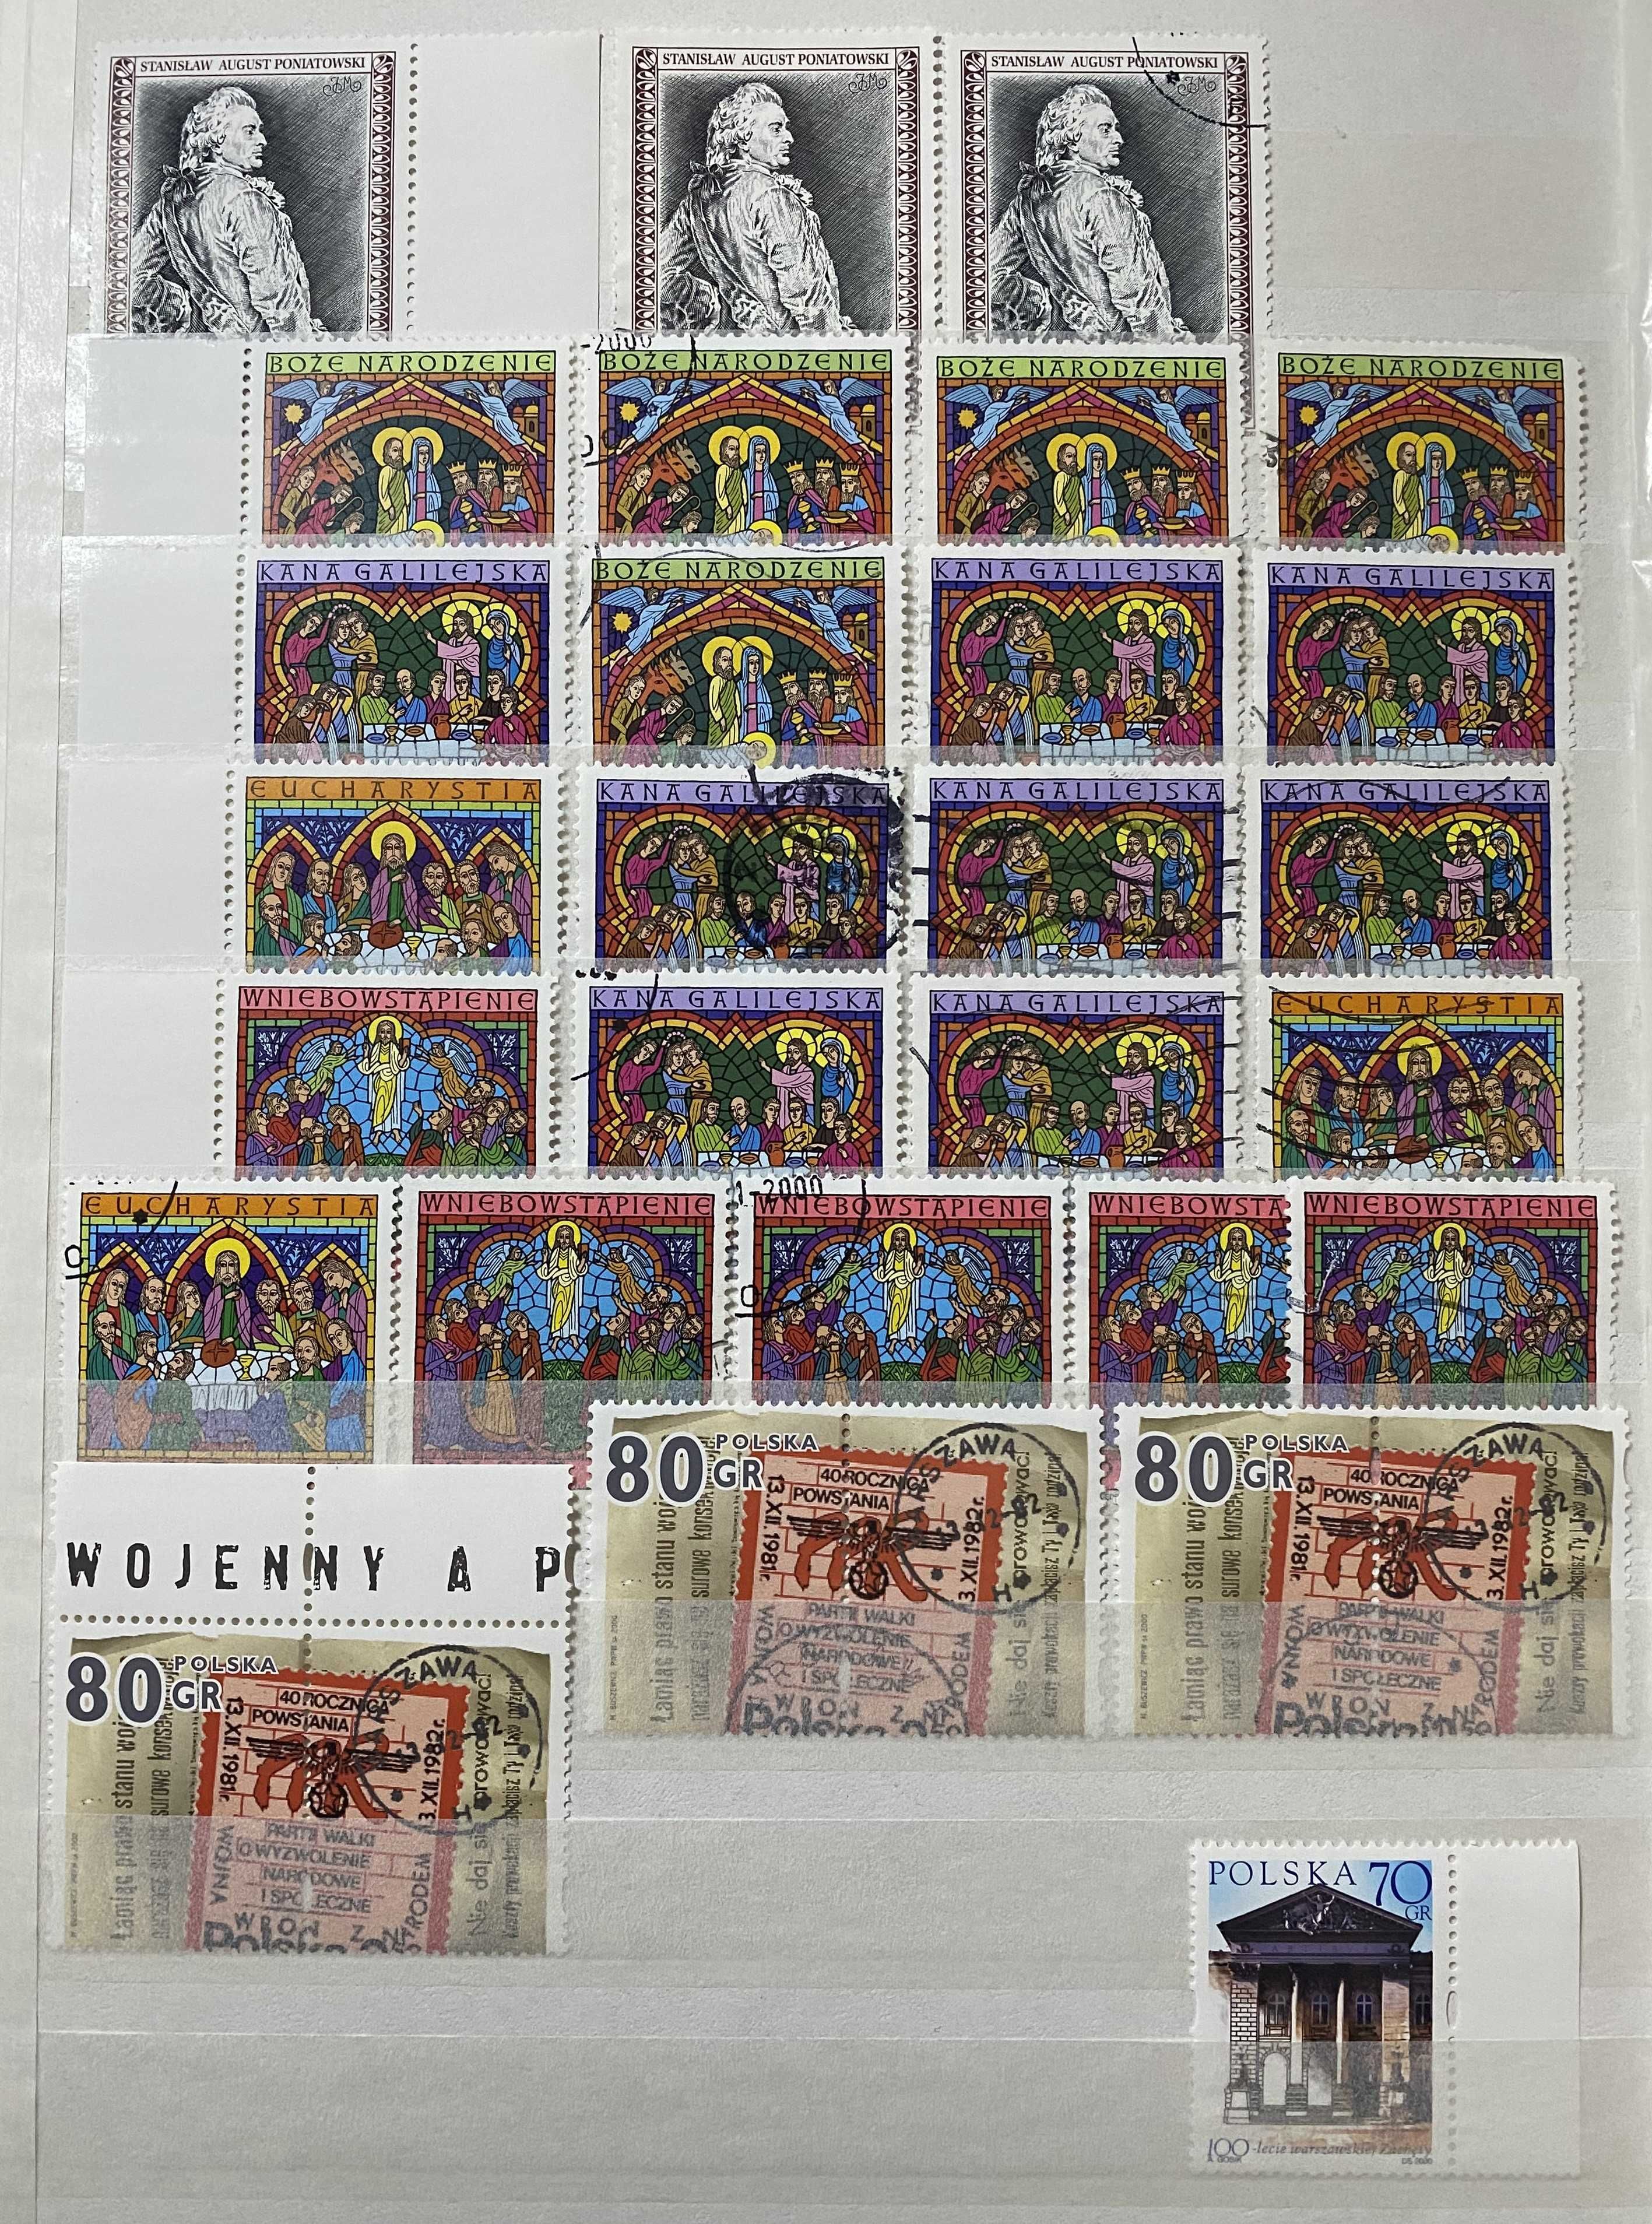 Rocznik znaczków Polska czystych i kasowanych 2000r dużo znaczków